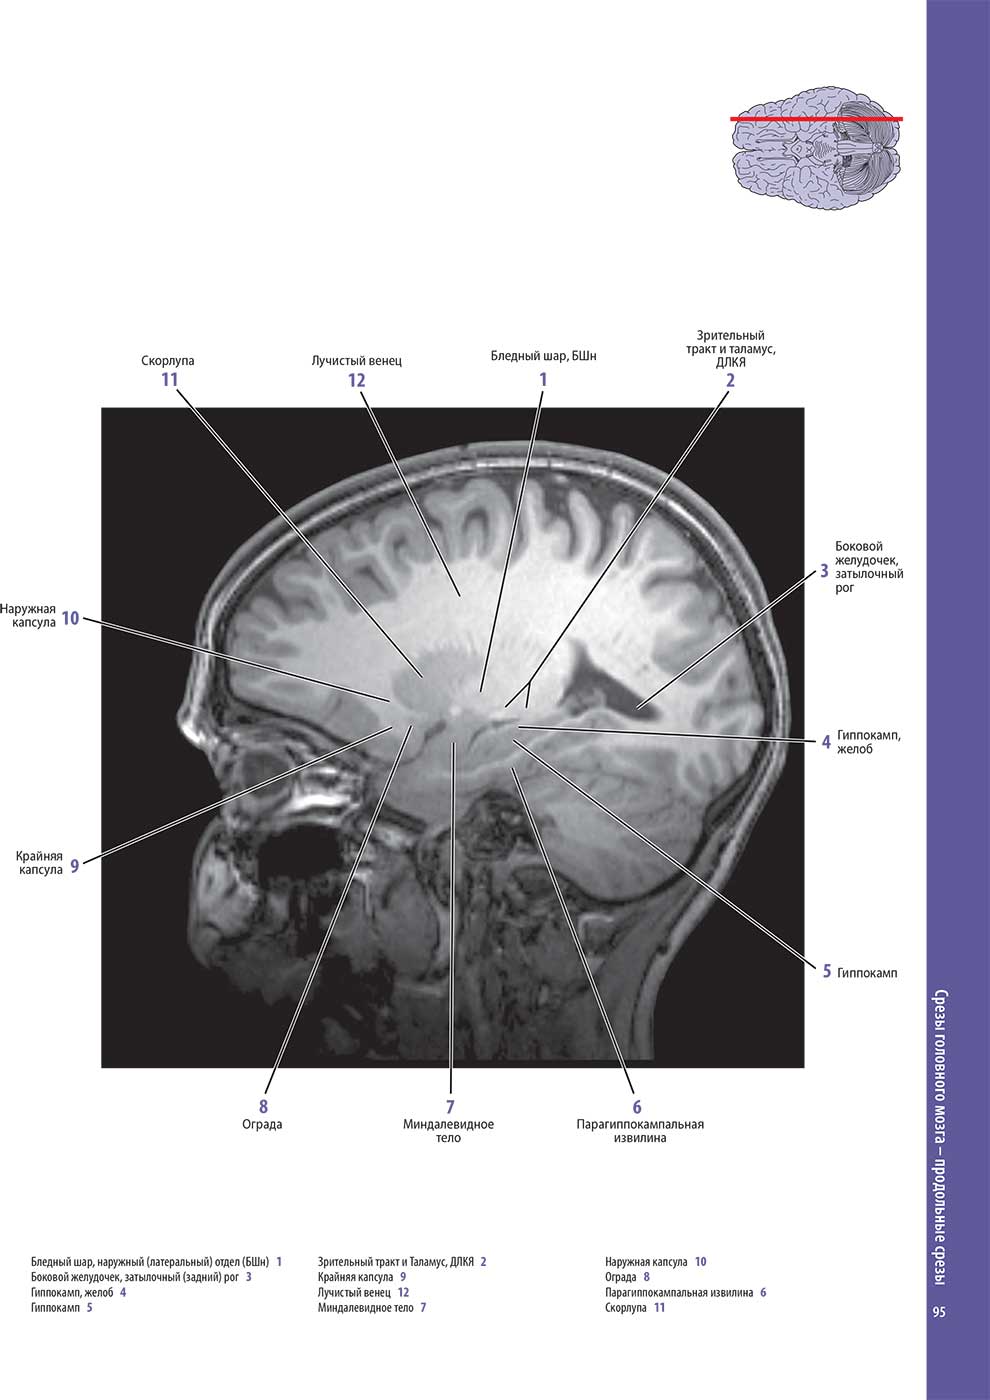 Пример страницы из книги "Атлас анатомии головного мозга" - Вулси Т. А. , Ханауэй Дж., Гадо М. Х.